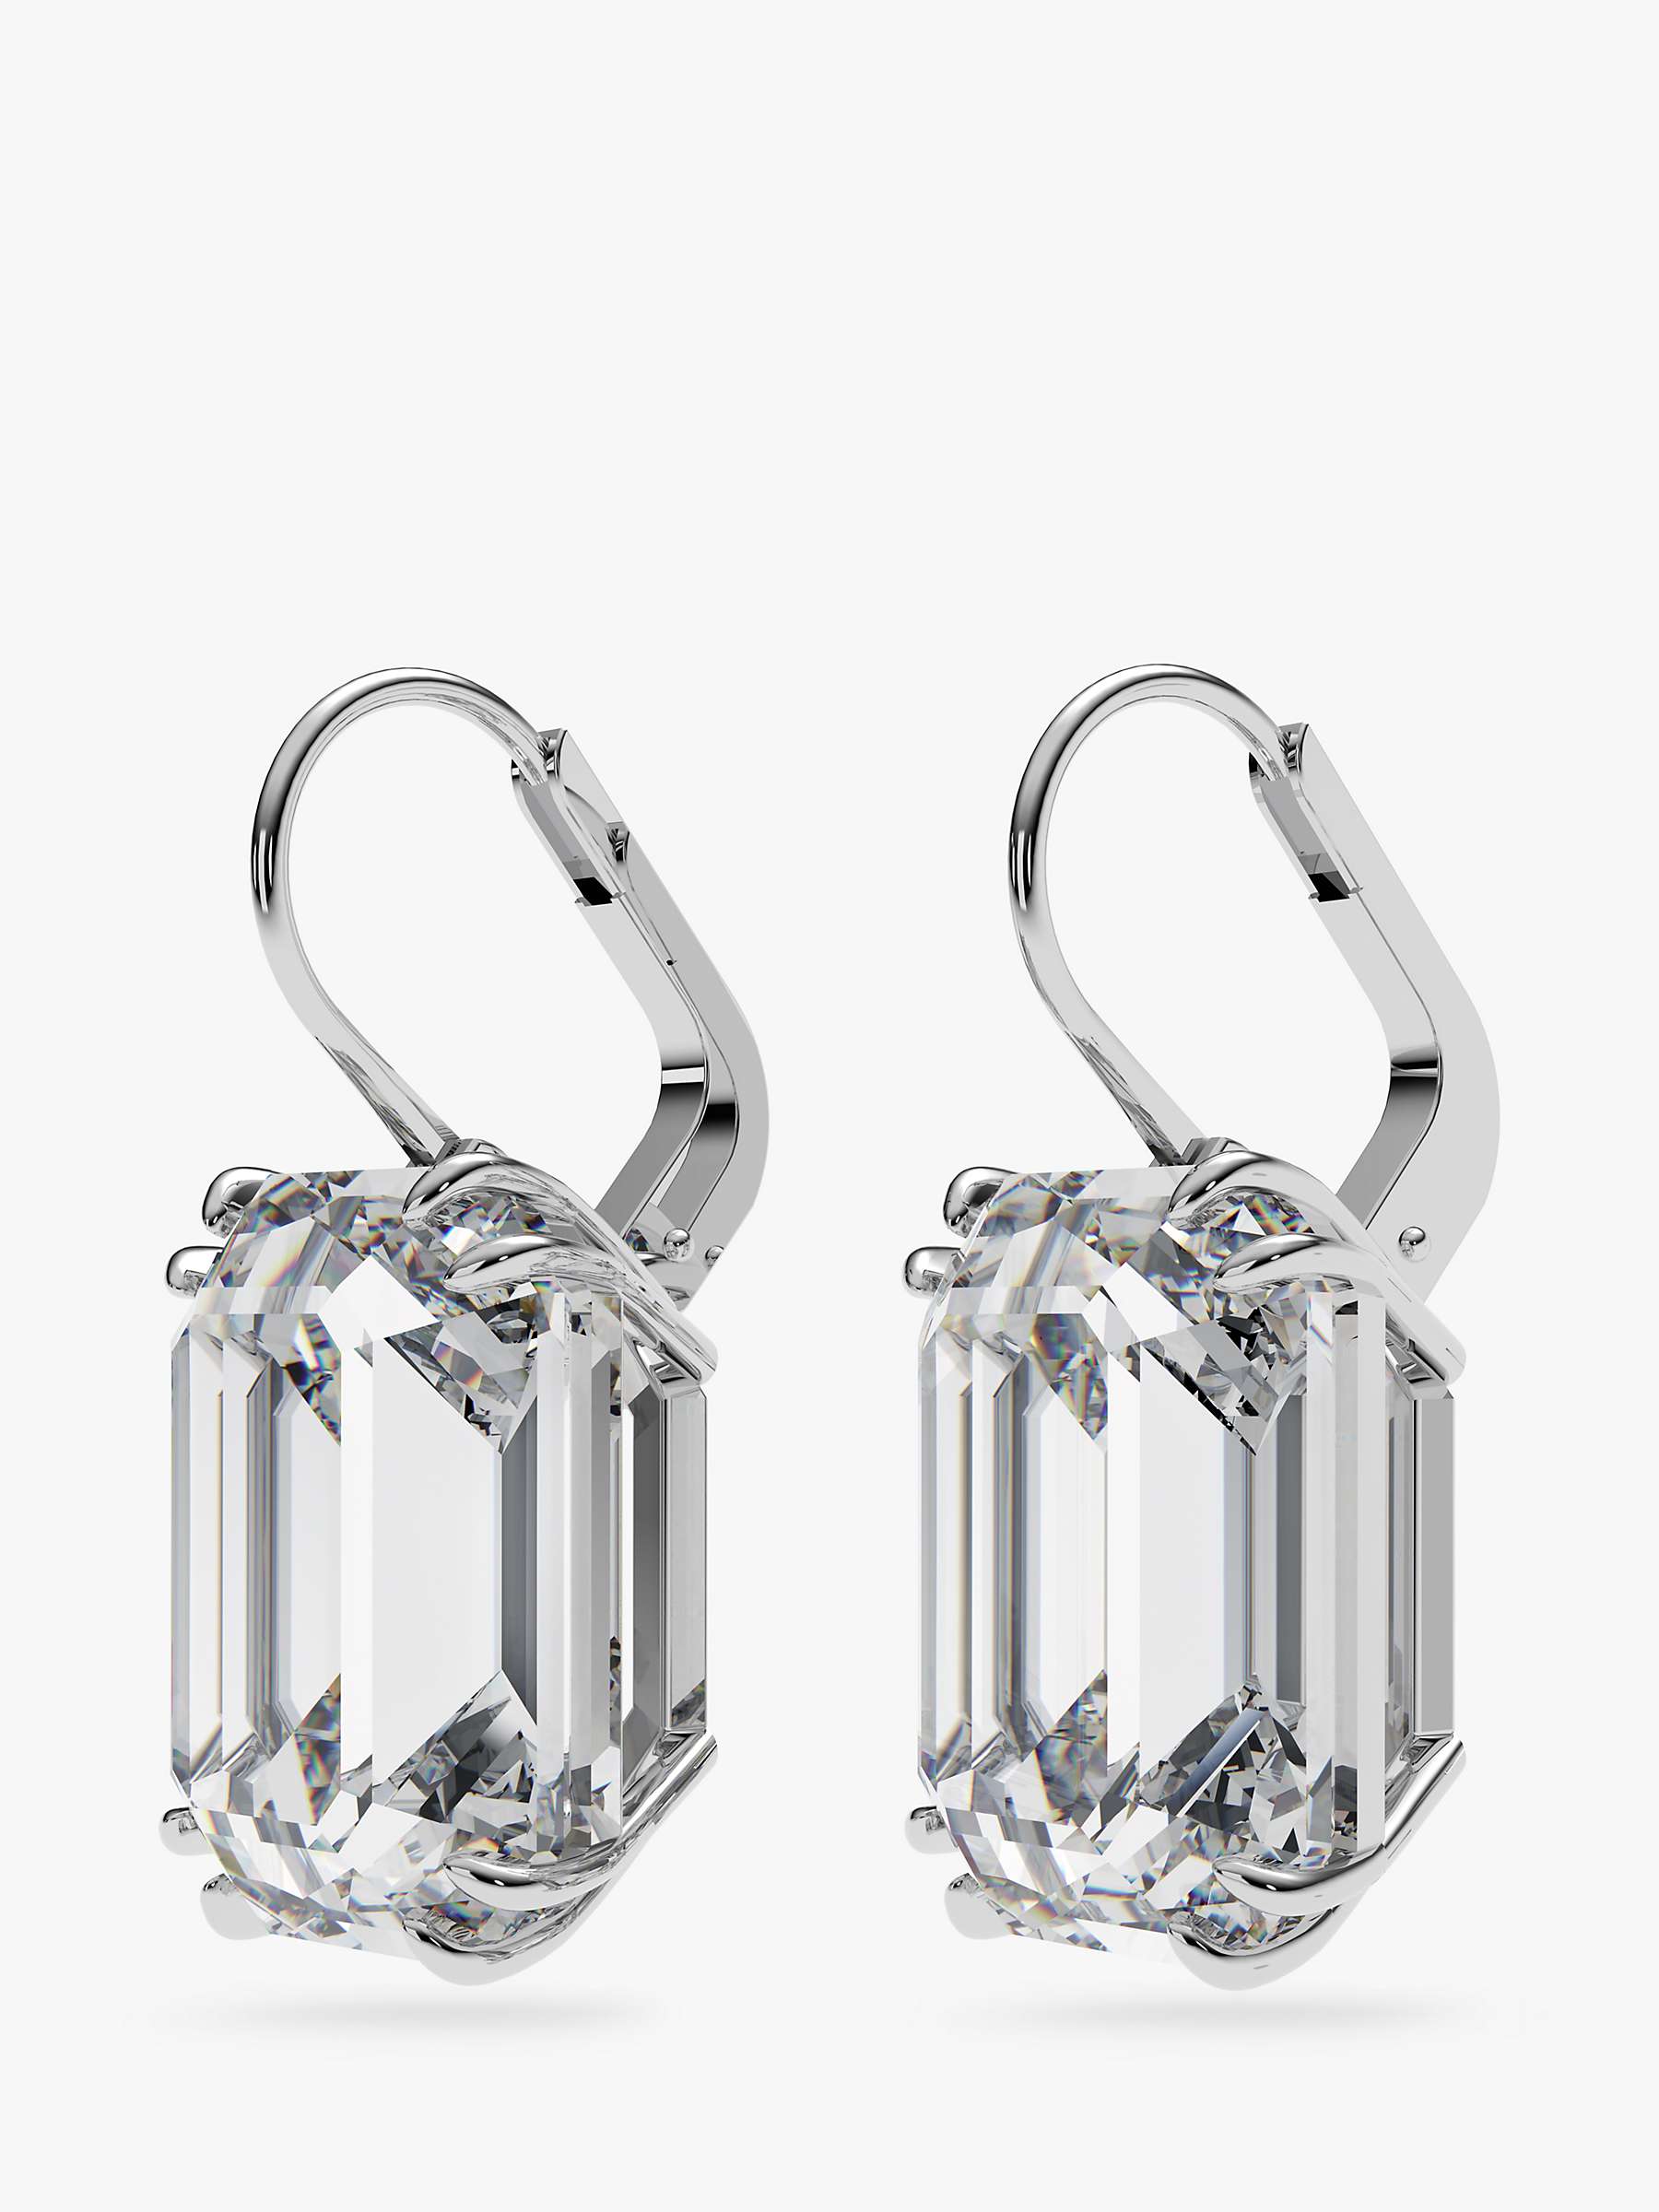 Buy Swarovski Millenia Octagon Cut Crystal Drop Earrings Online at johnlewis.com